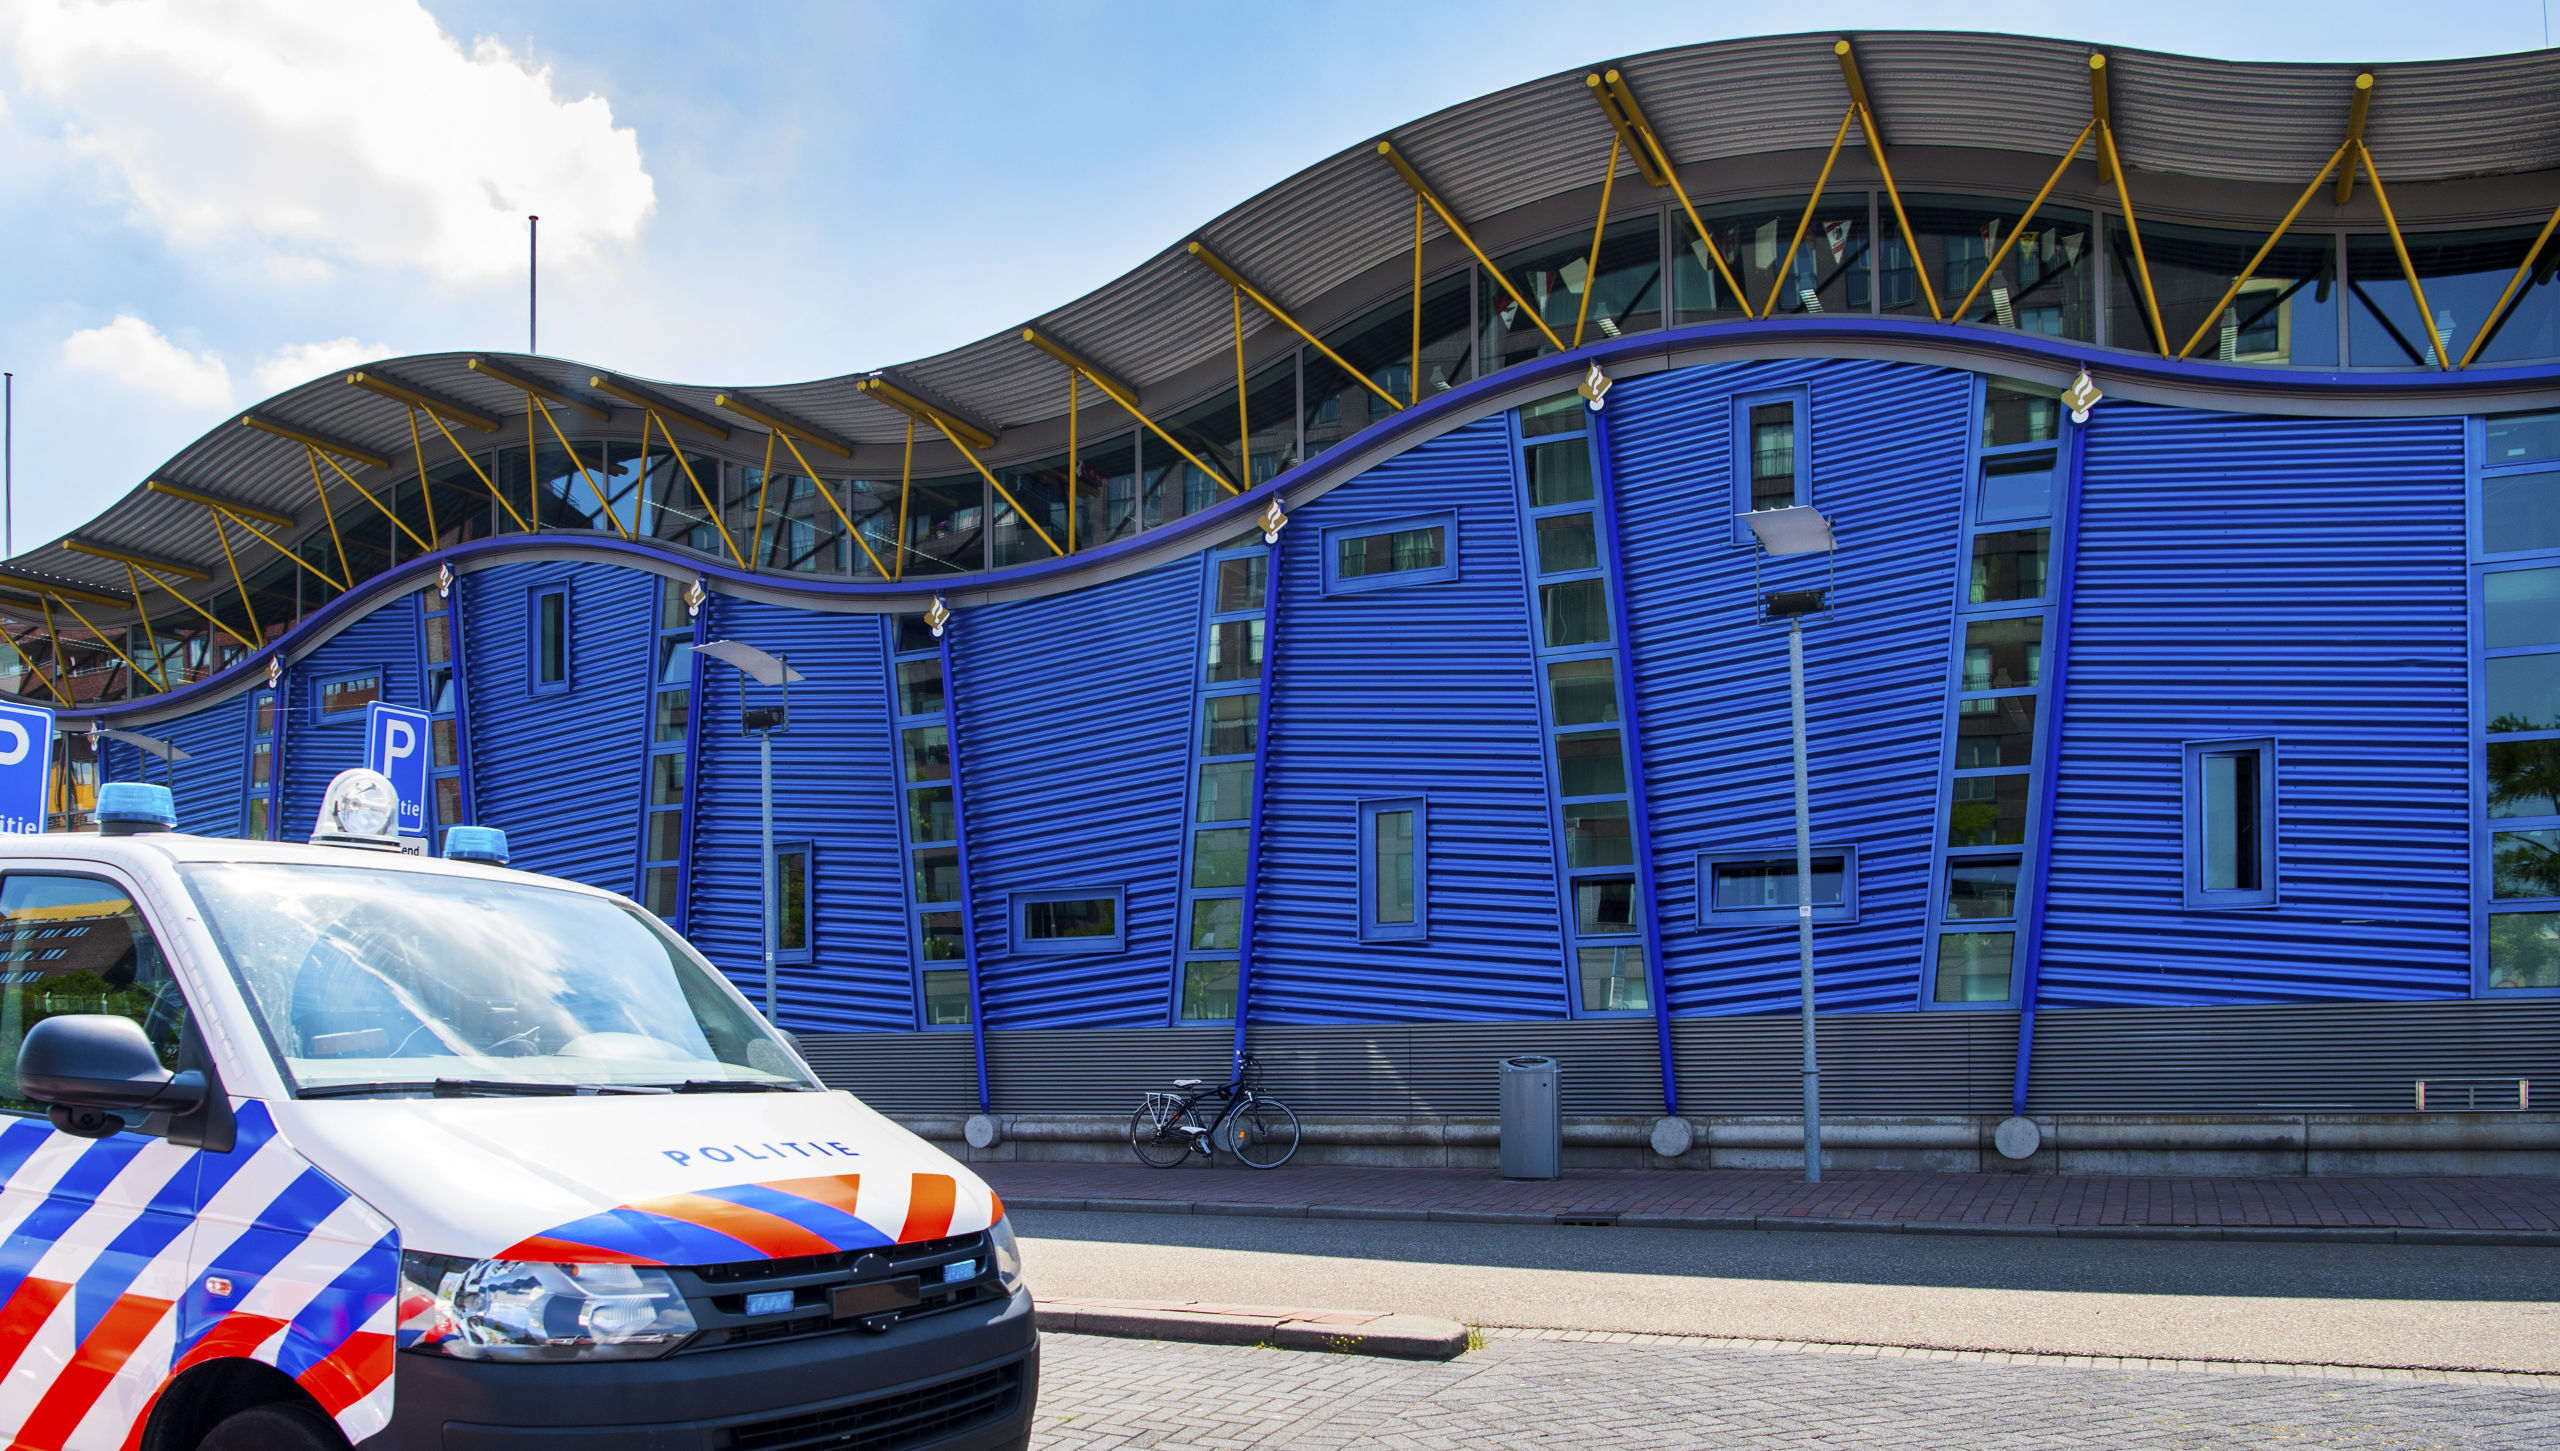 Politiebureau De Veranda in Rotterdam zou het doelwit van de aanslag zijn geweest.